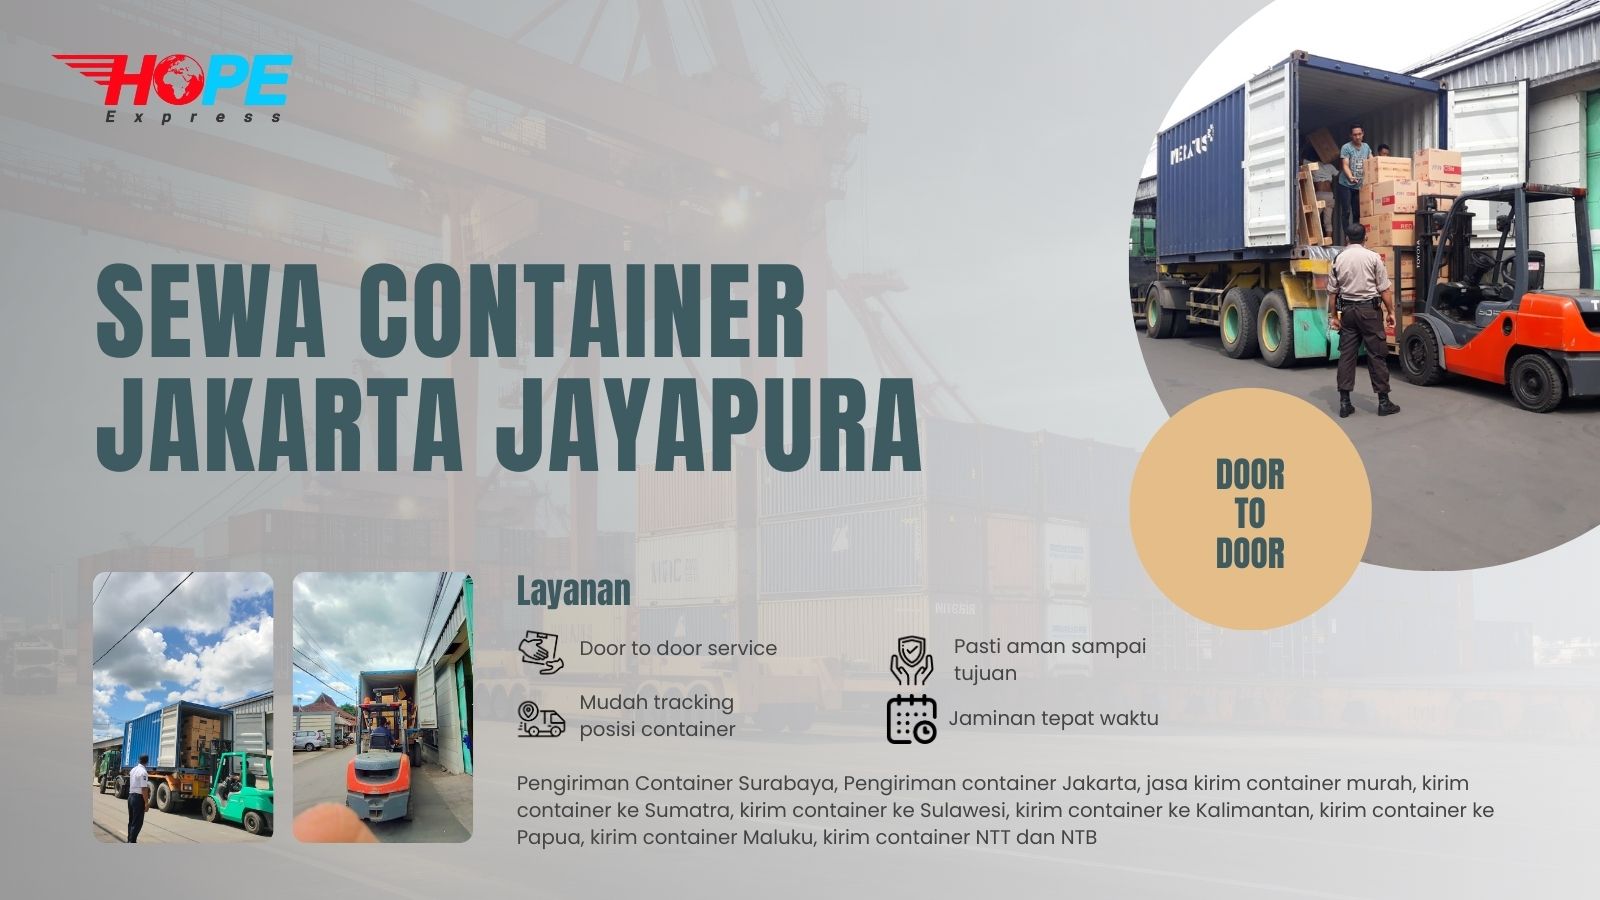 Sewa Container Jakarta Jayapura